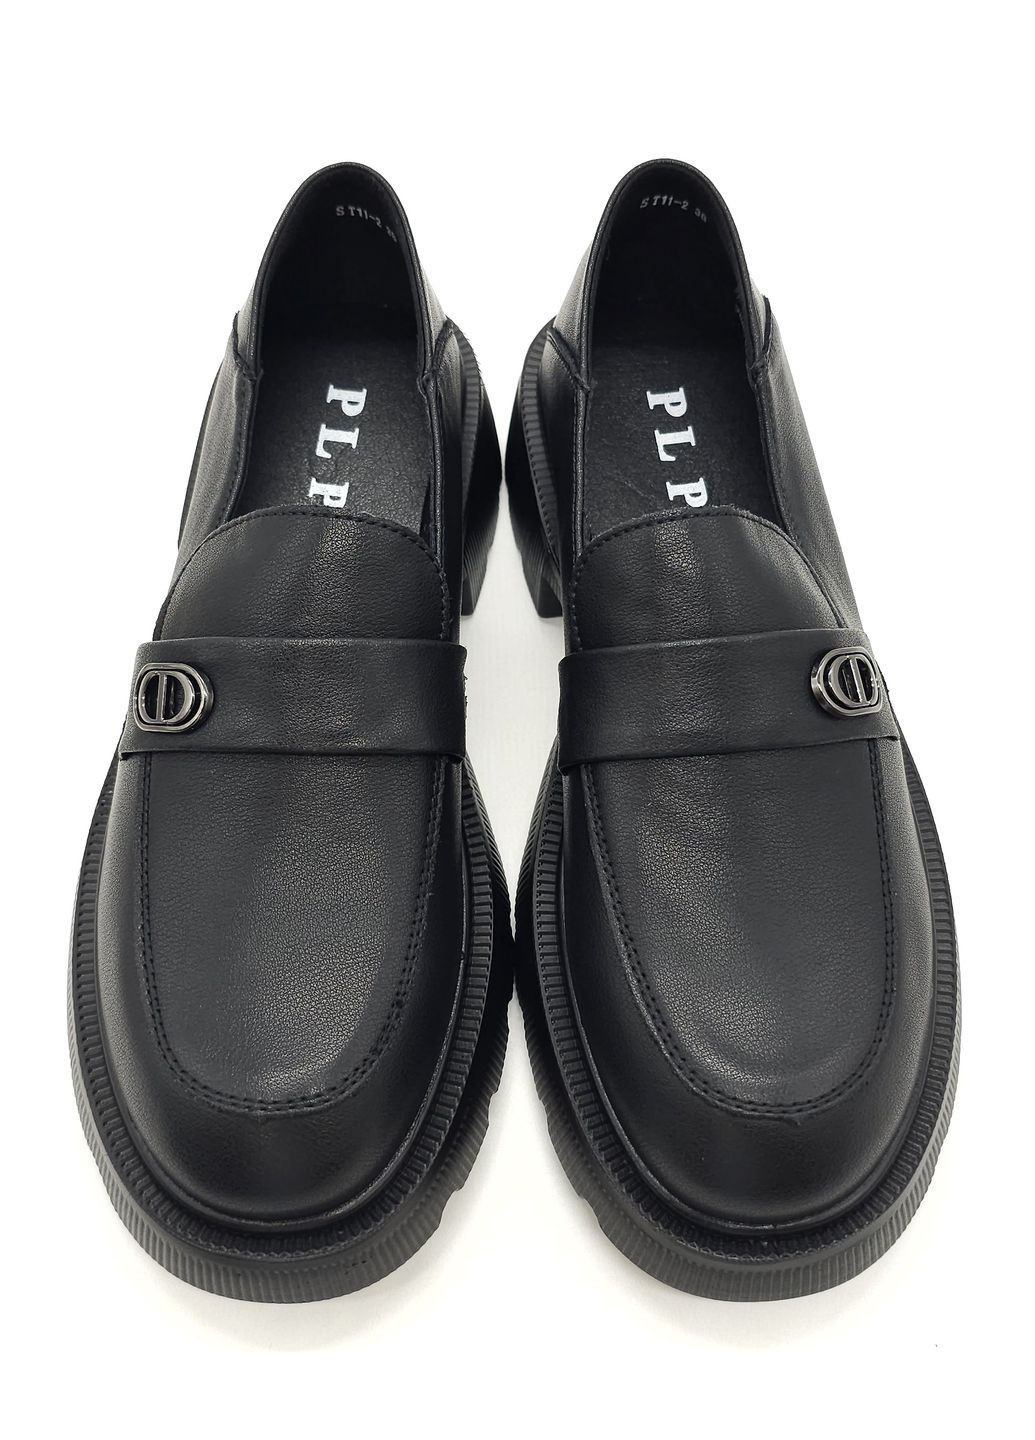 Женские туфли черные кожаные PP-19-7 23 см(р) PL PS